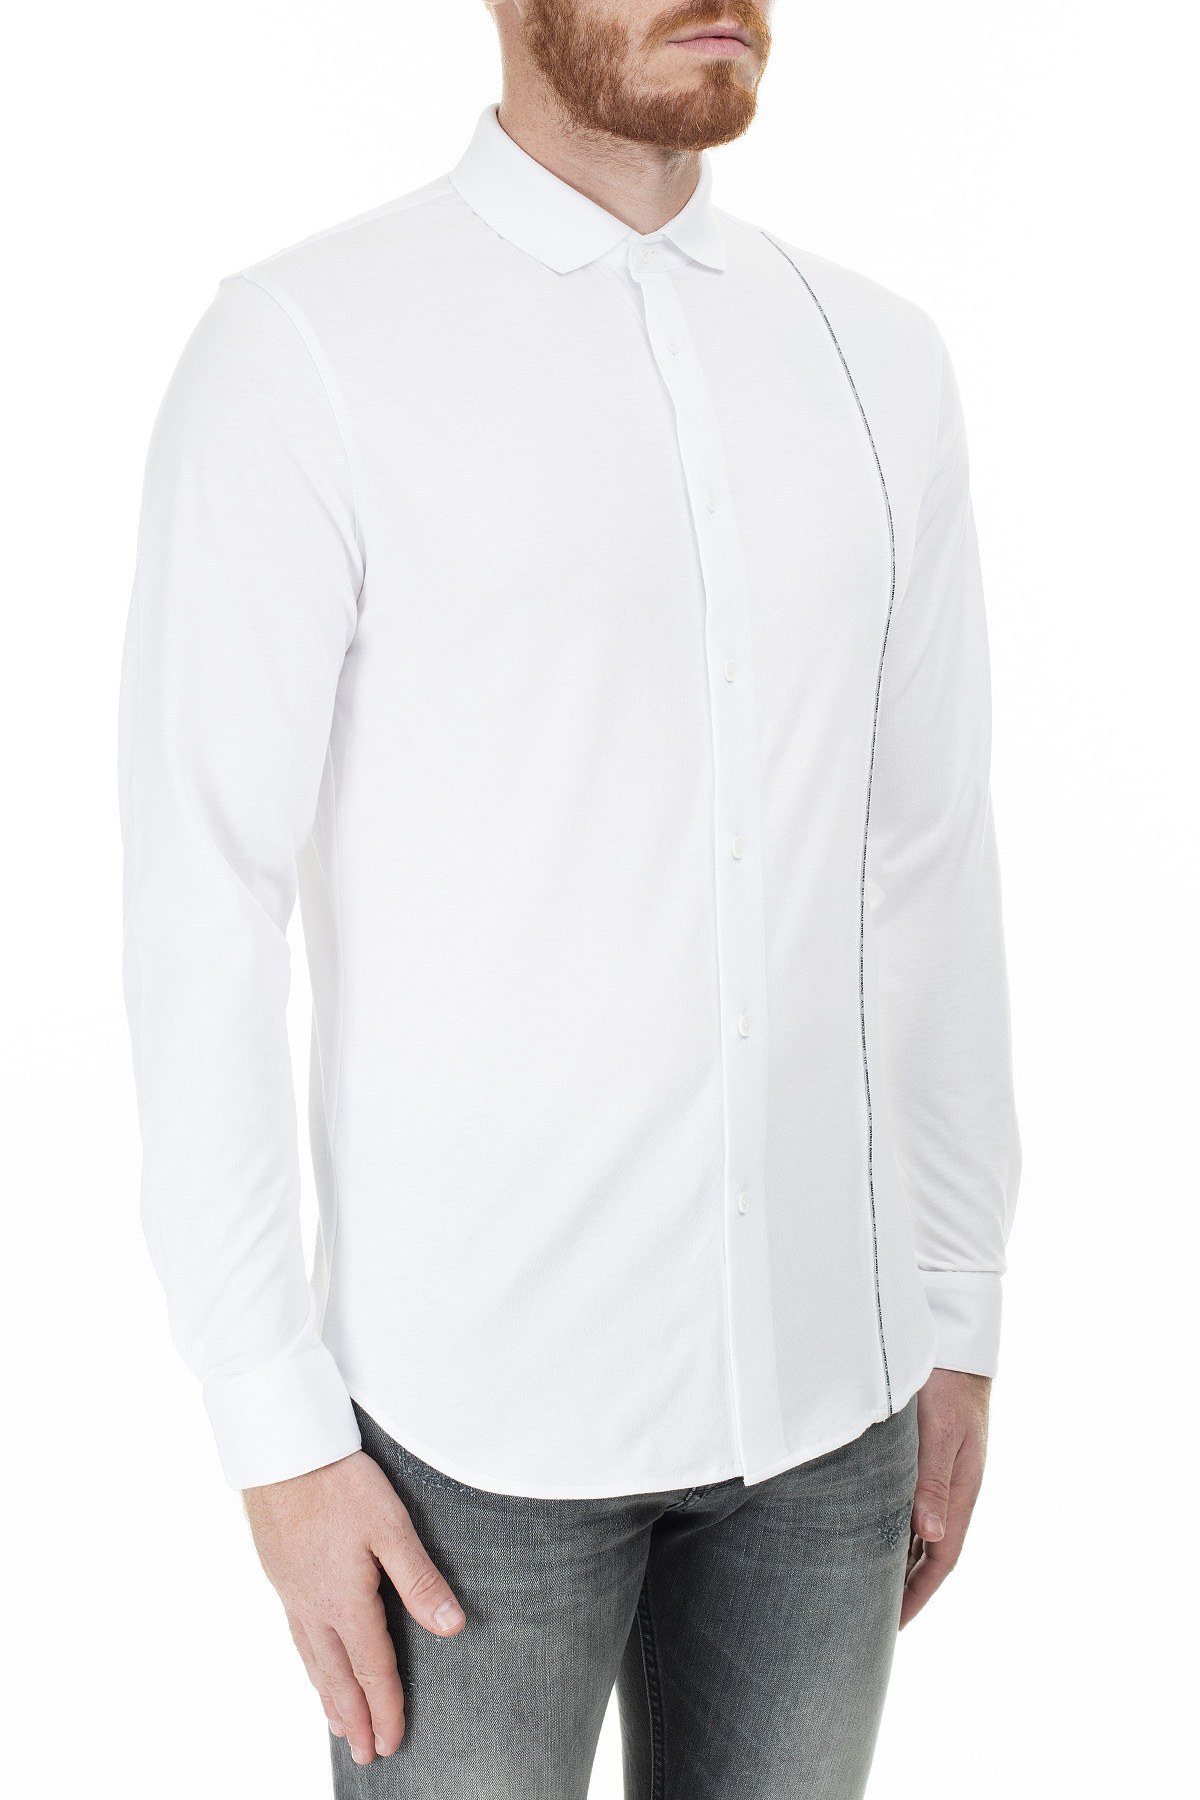 Armani Exchange Logo Baskılı Şerit Regular Fit Uzun Kollu Erkek Gömlek 3HZCGA ZJH4Z 1100 BEYAZ